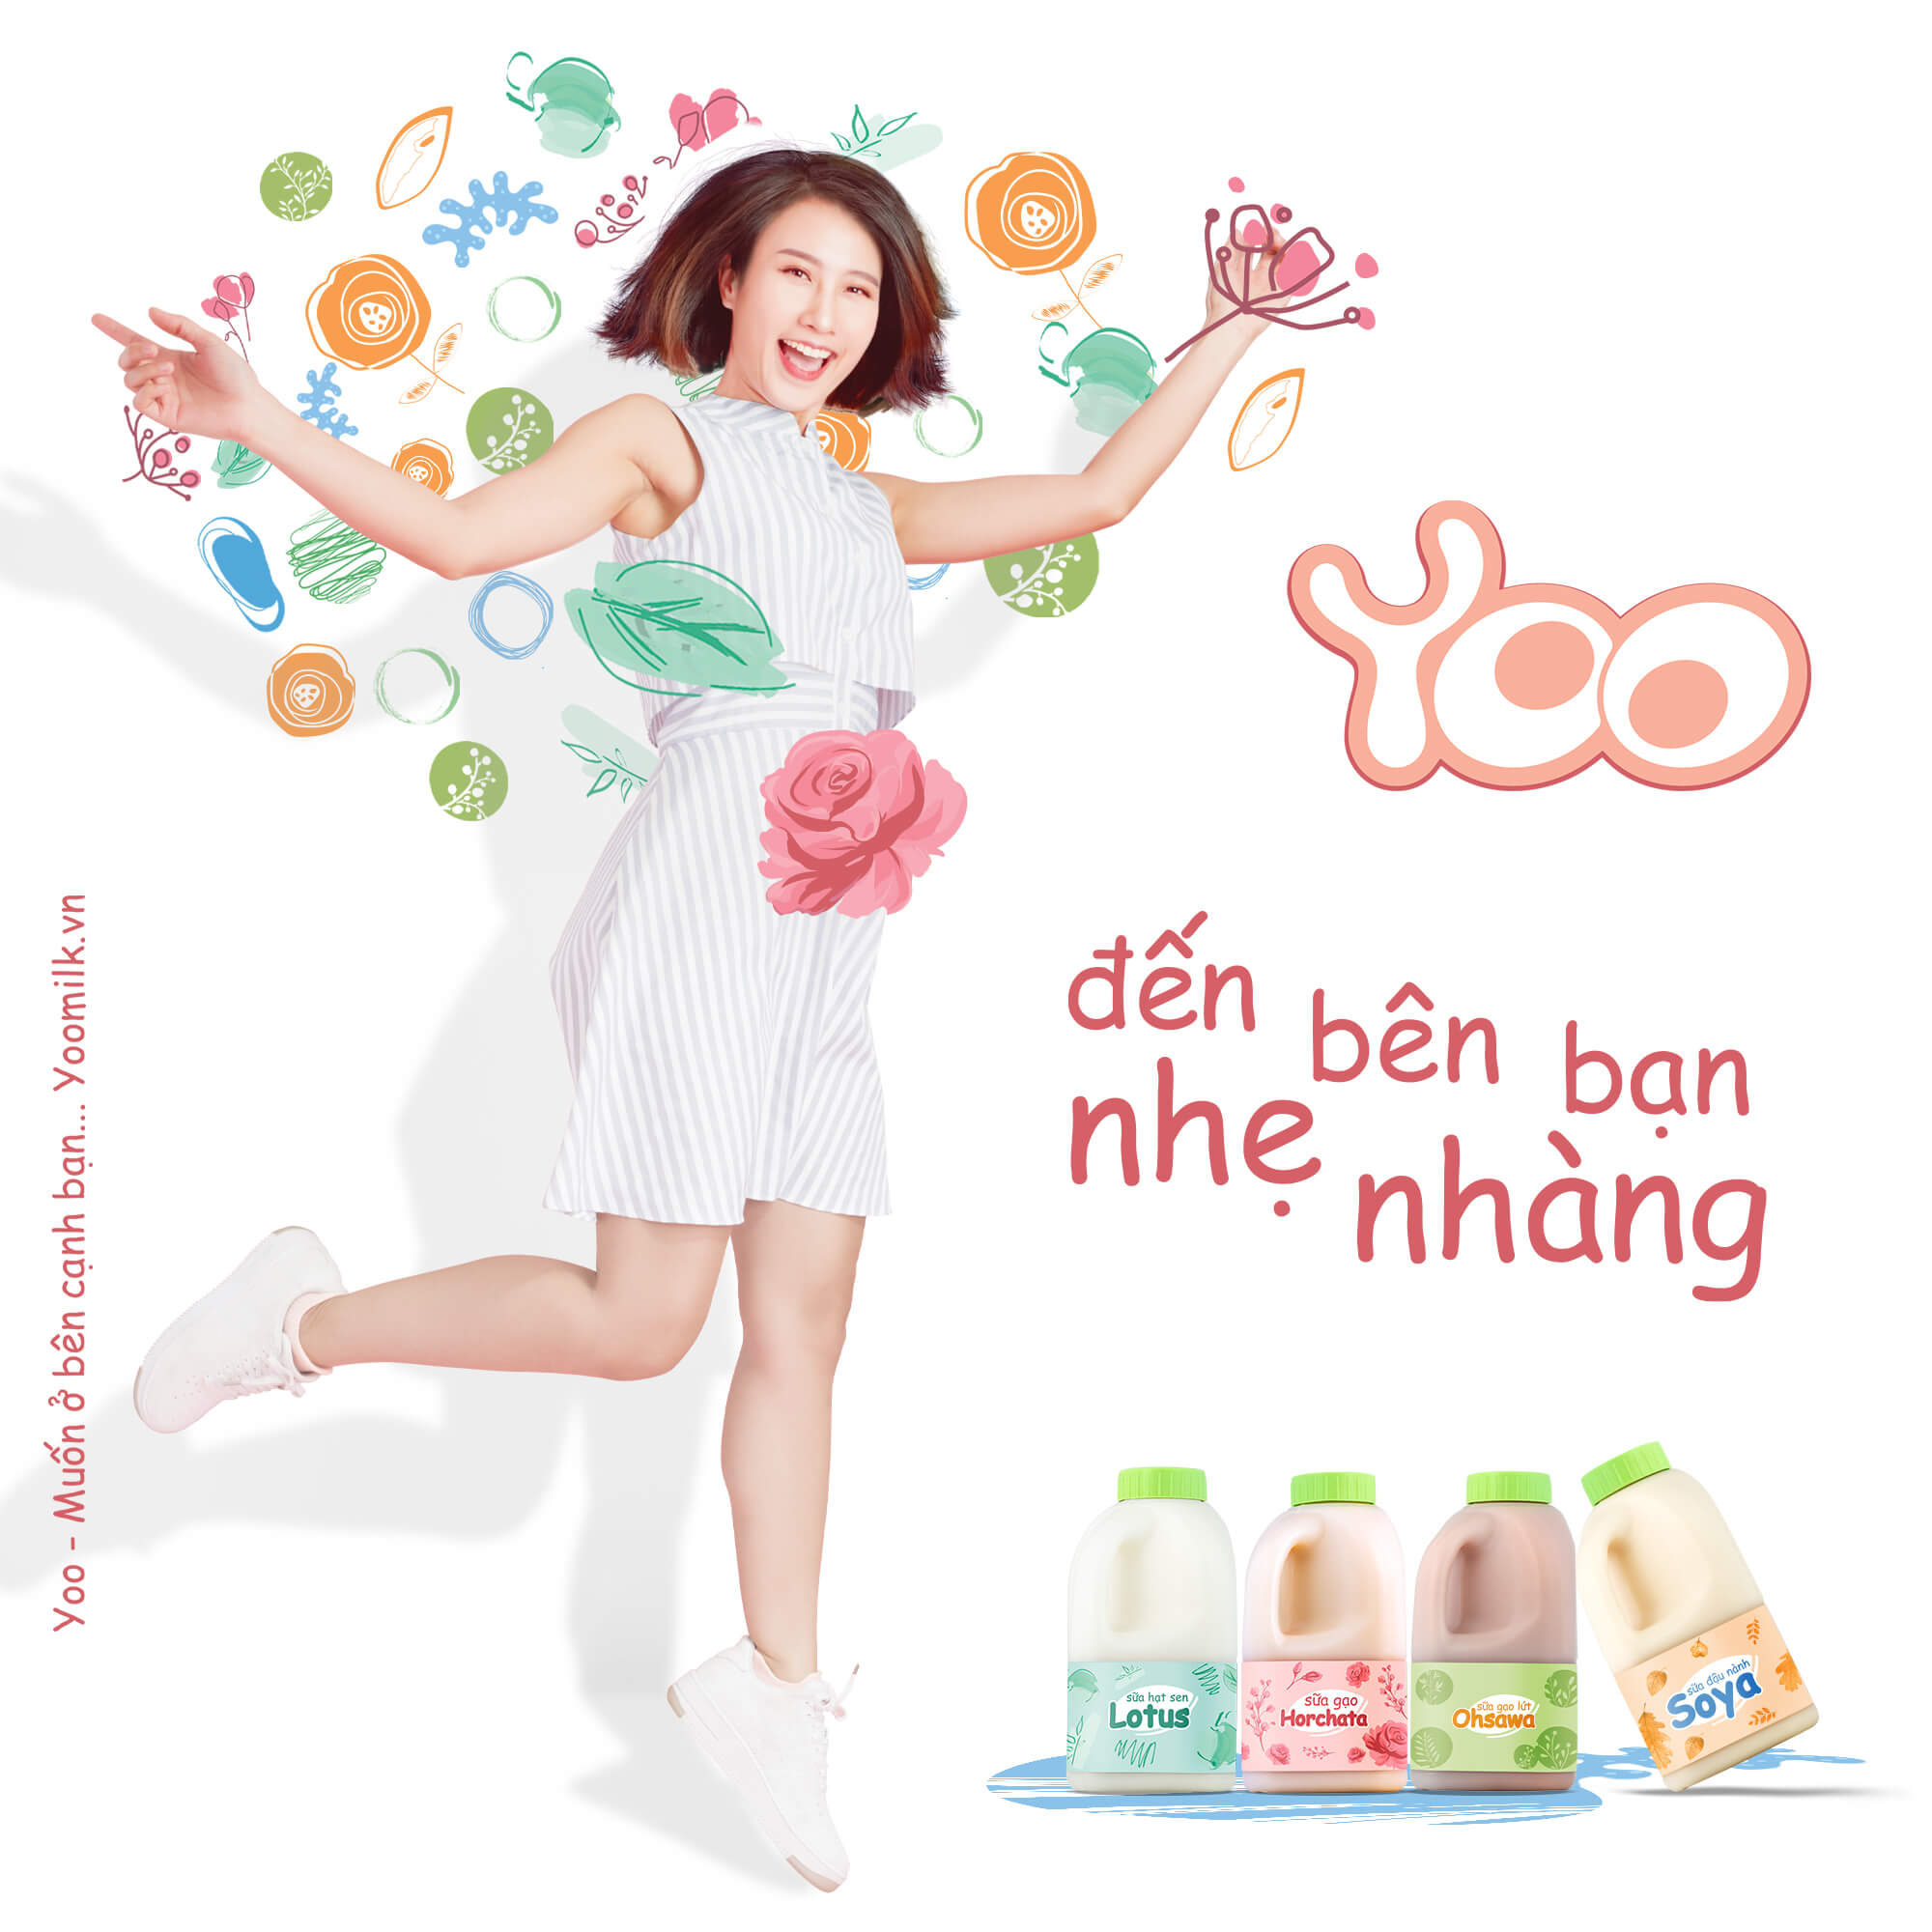 yoo-milk-den-ben-ban-nhe-nhang-05.jpg